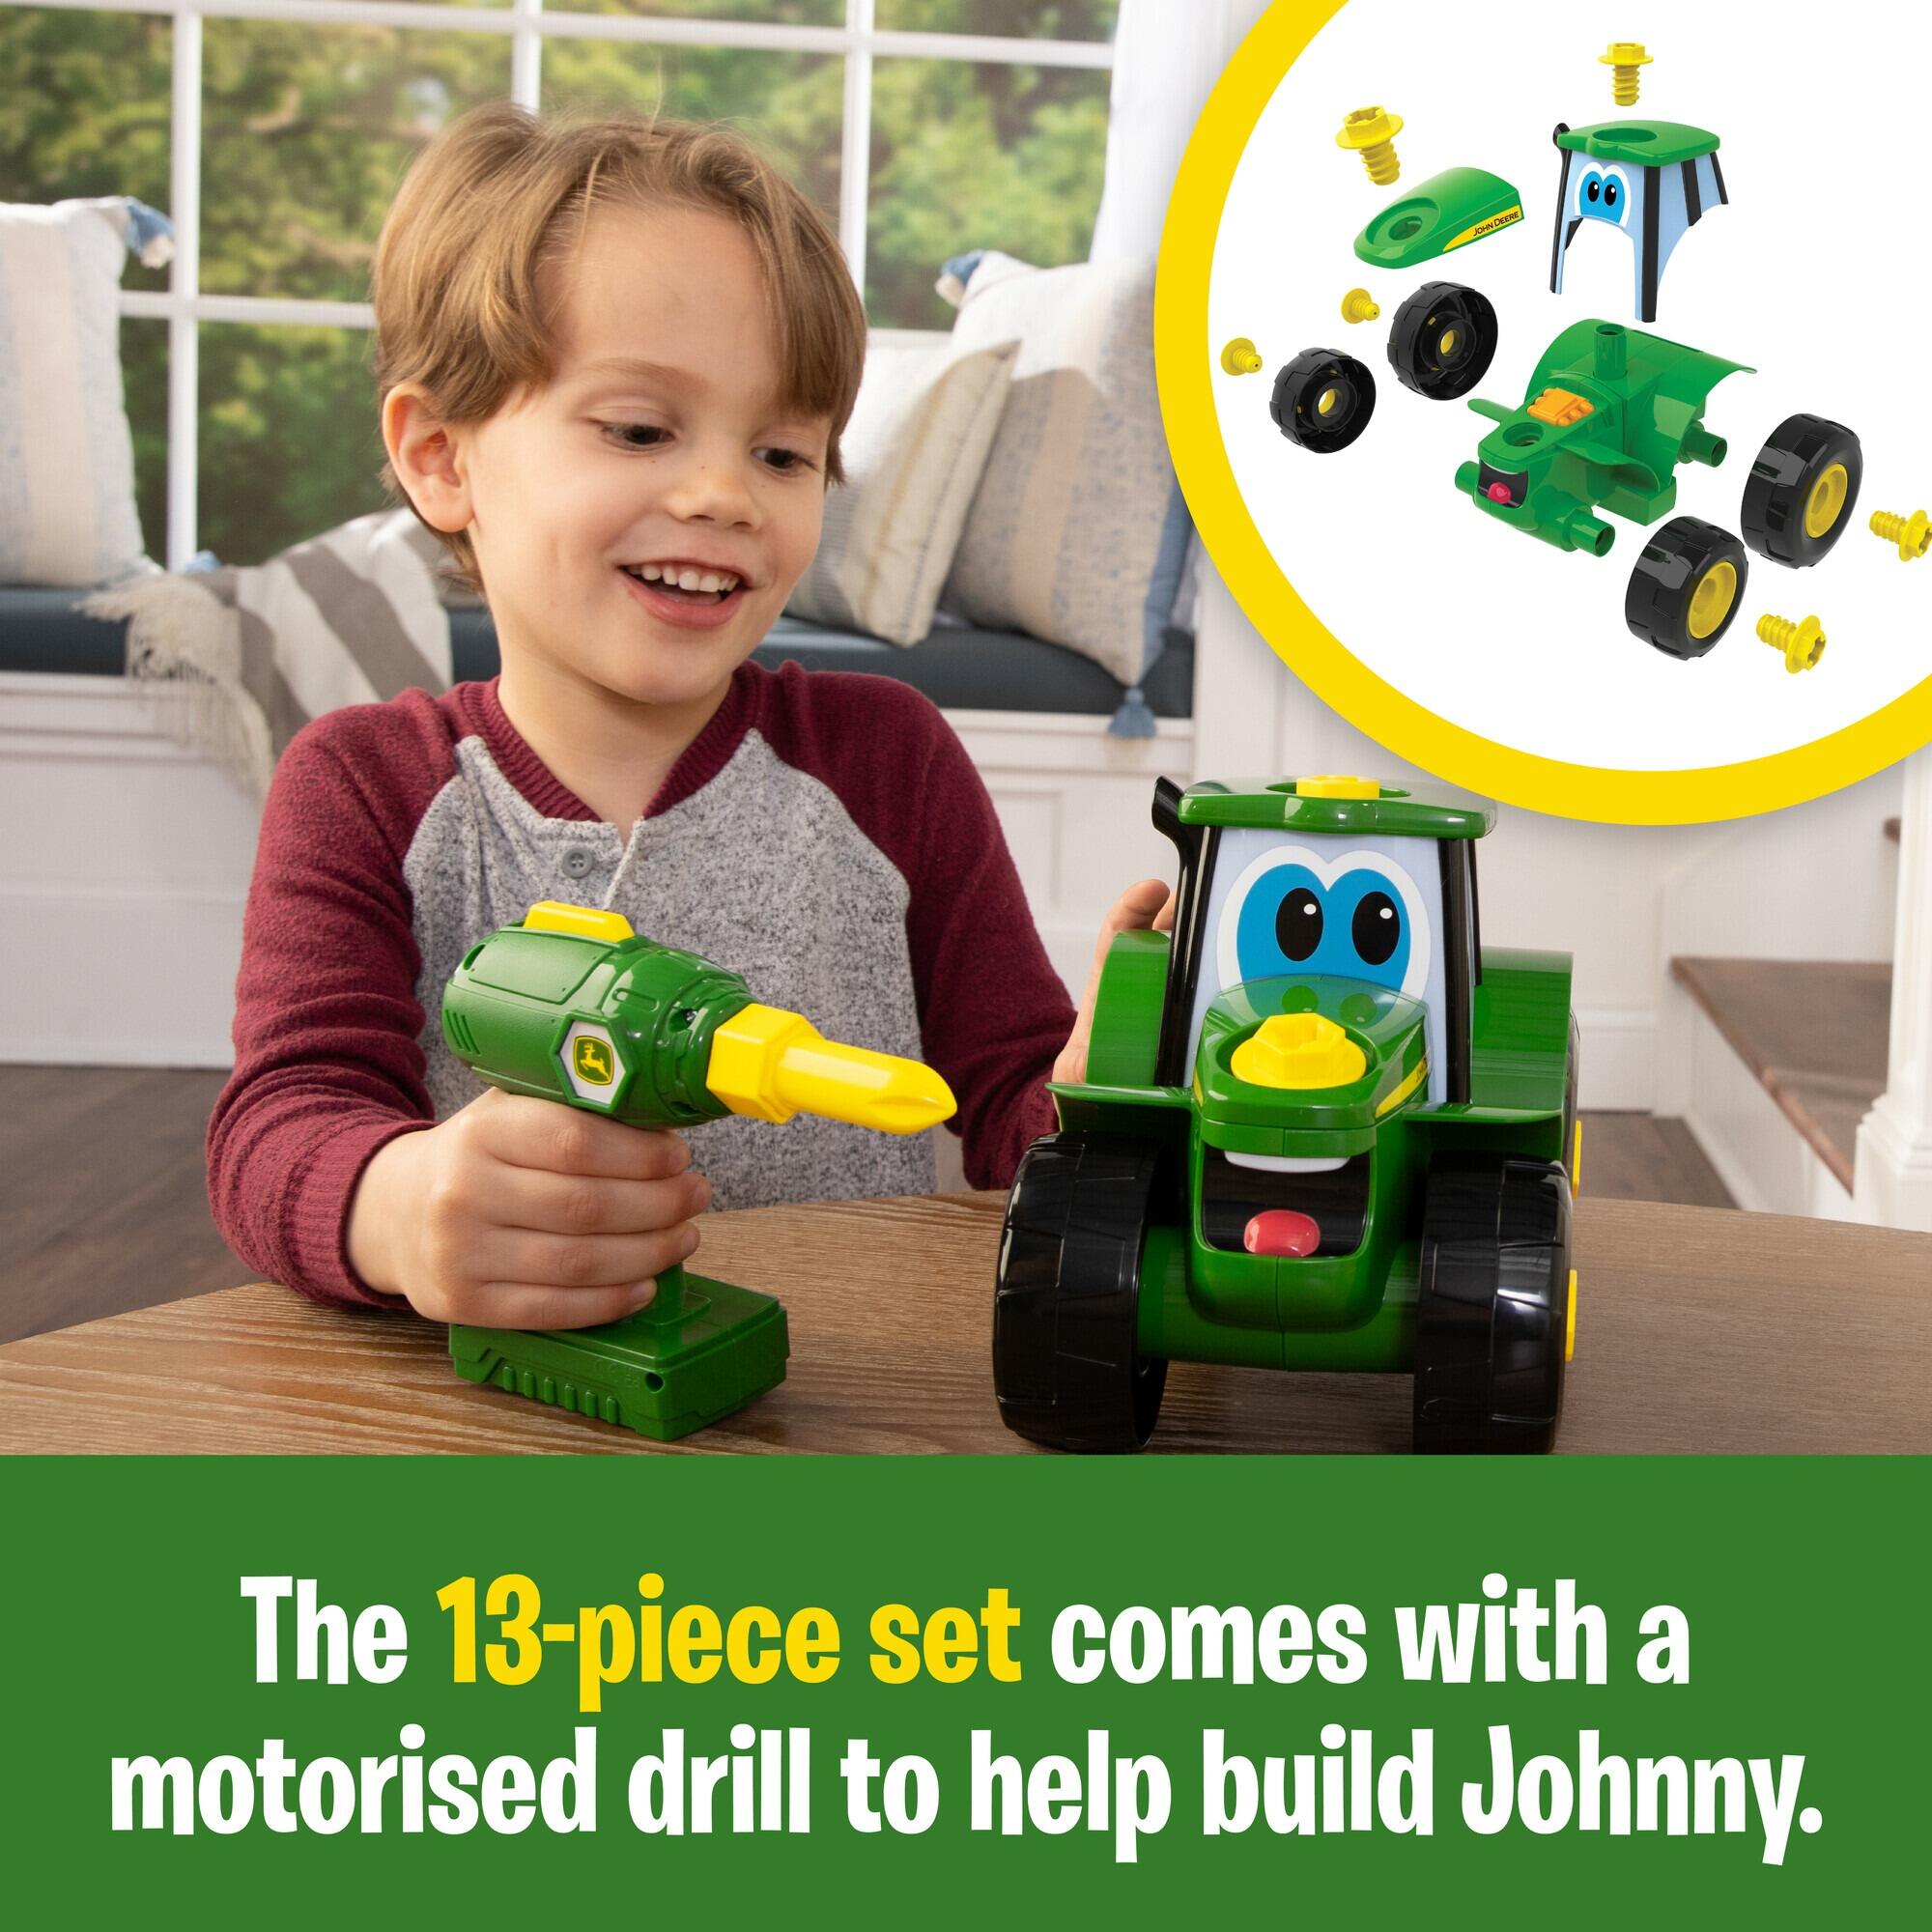 Key-N-Go Johnny Tractor